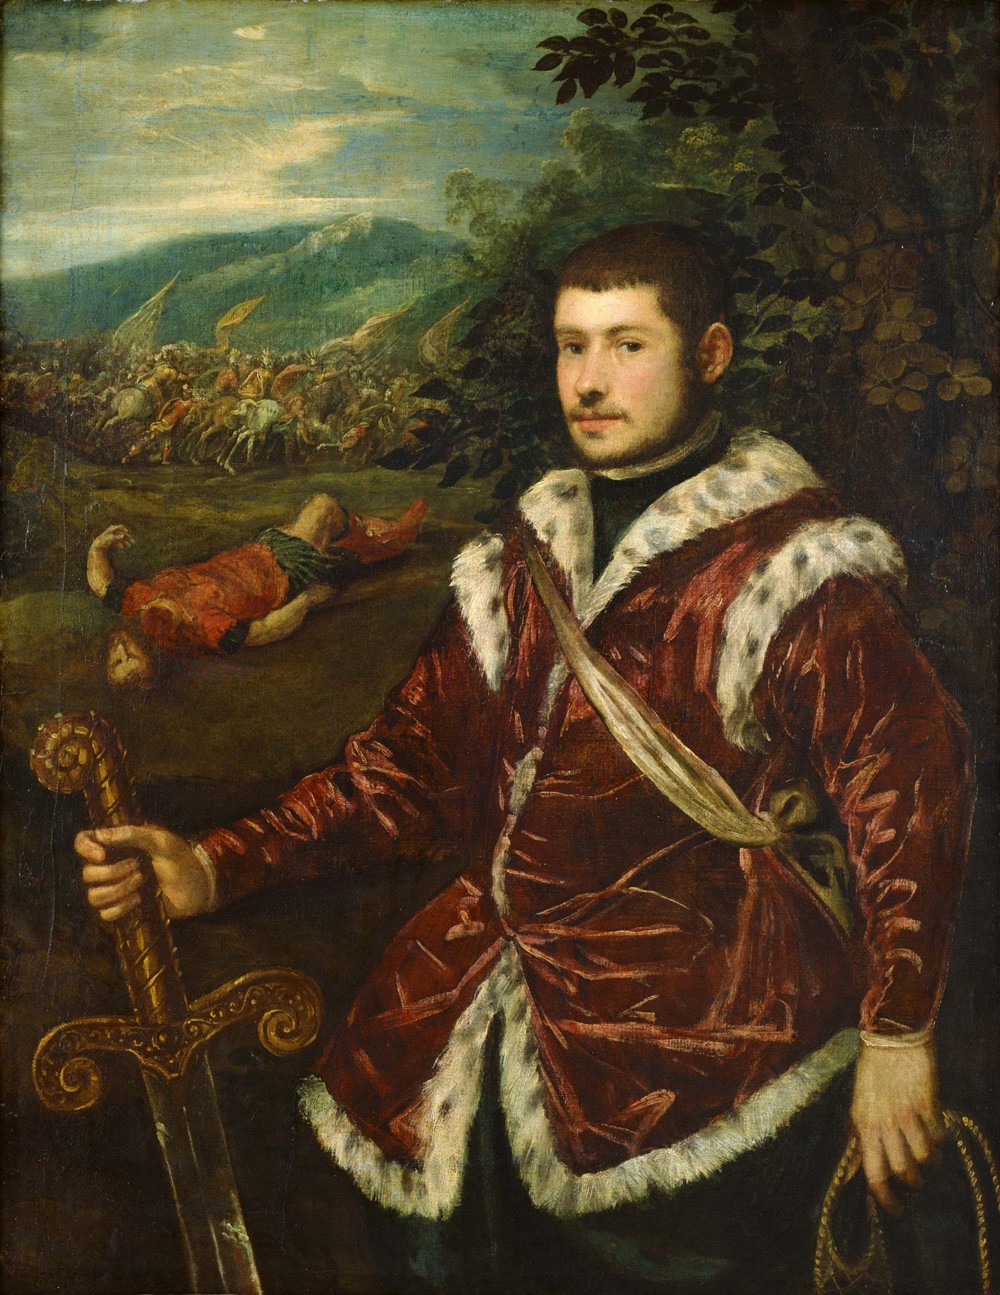 Foto 1 - Retrato de um Jovem como David Herói Bíblico Gigante Golias Morto Pintura de Tintoretto em TELA 